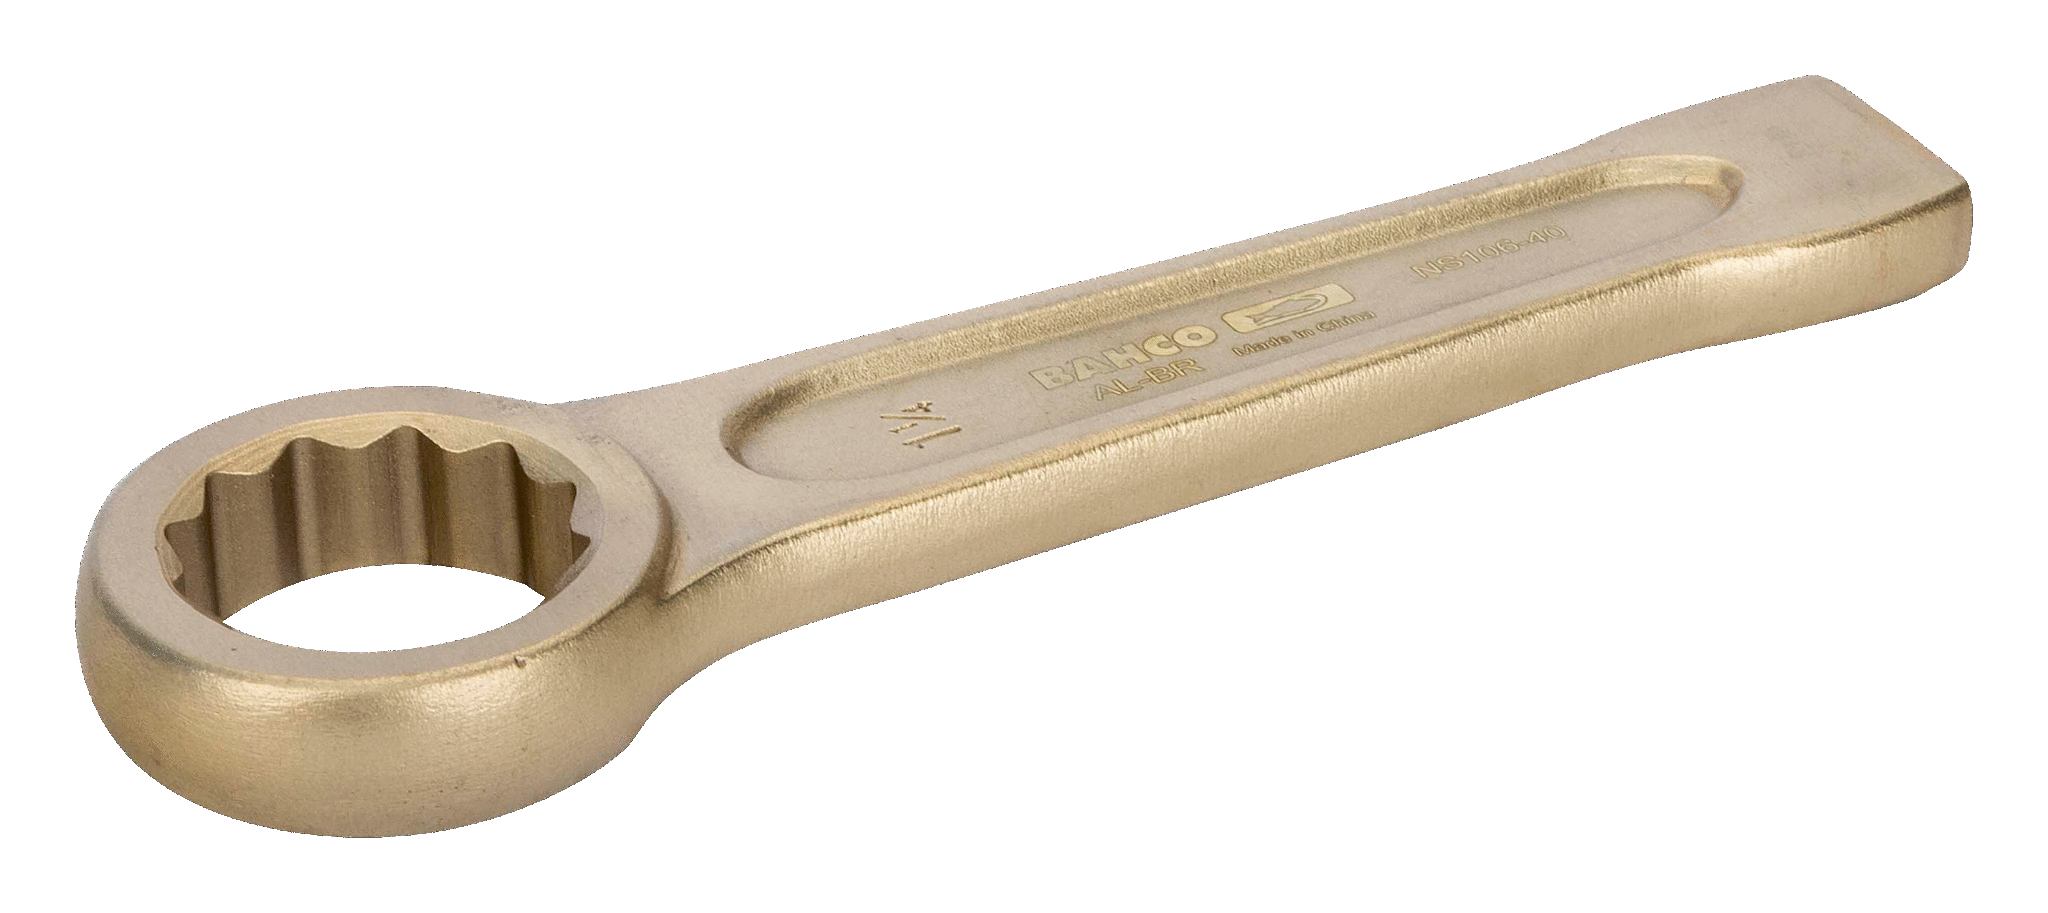 картинка Ударный накидной ключ дюймовых размеров BAHCO NS106-76 от магазина "Элит-инструмент"